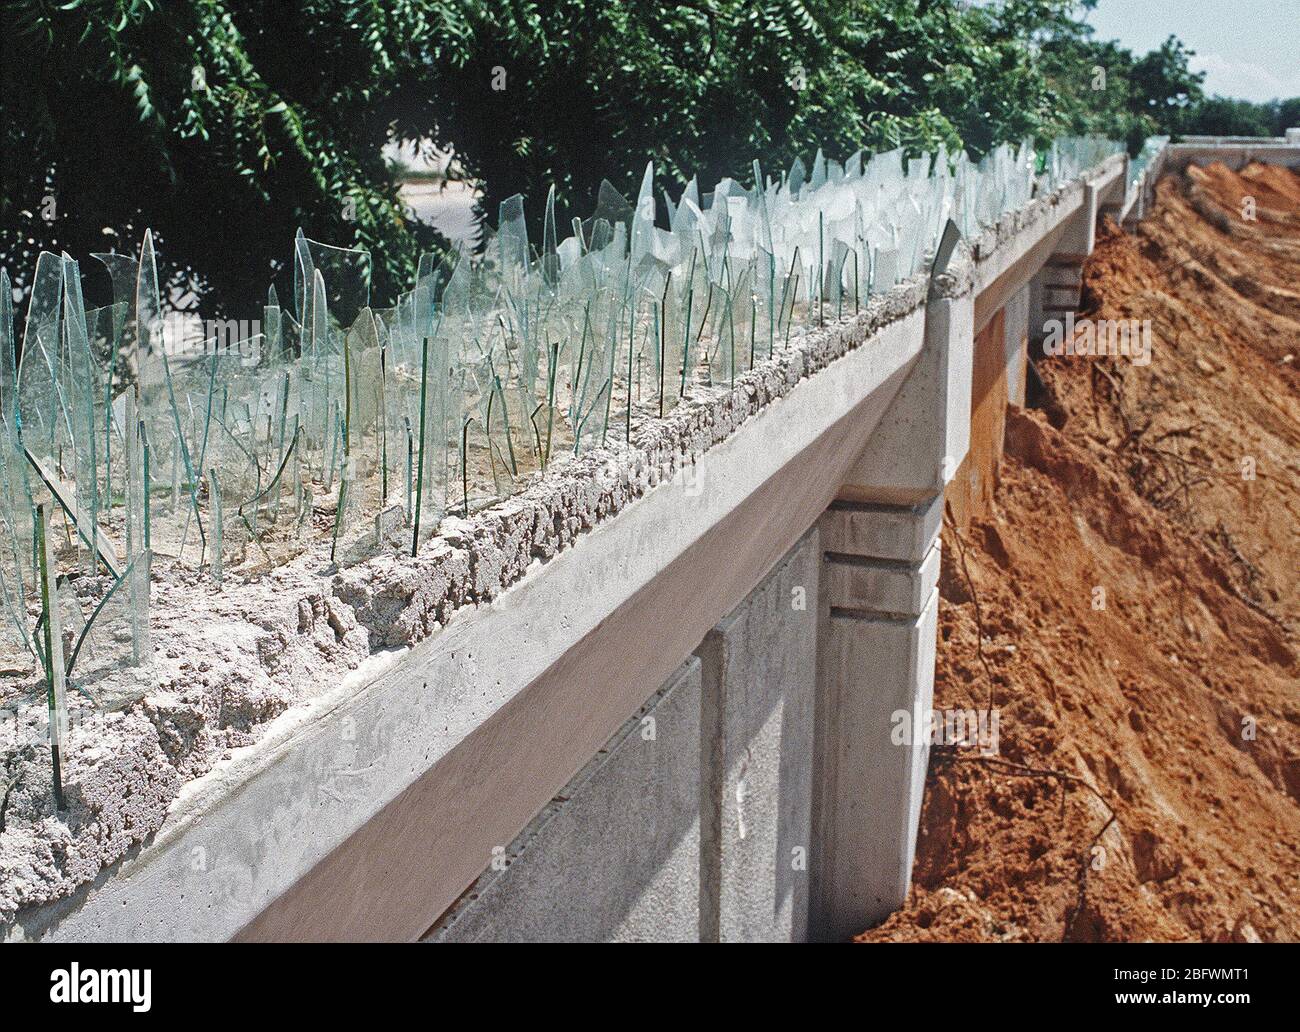 1993 - Una vista di una sezione del muro che circonda la Joint Task Force Somalia quartier generale. Il quartier generale è stato stabilito nella ex U.S. Embassy composto durante la multinazionale soccorsi Restore Hope. Foto Stock